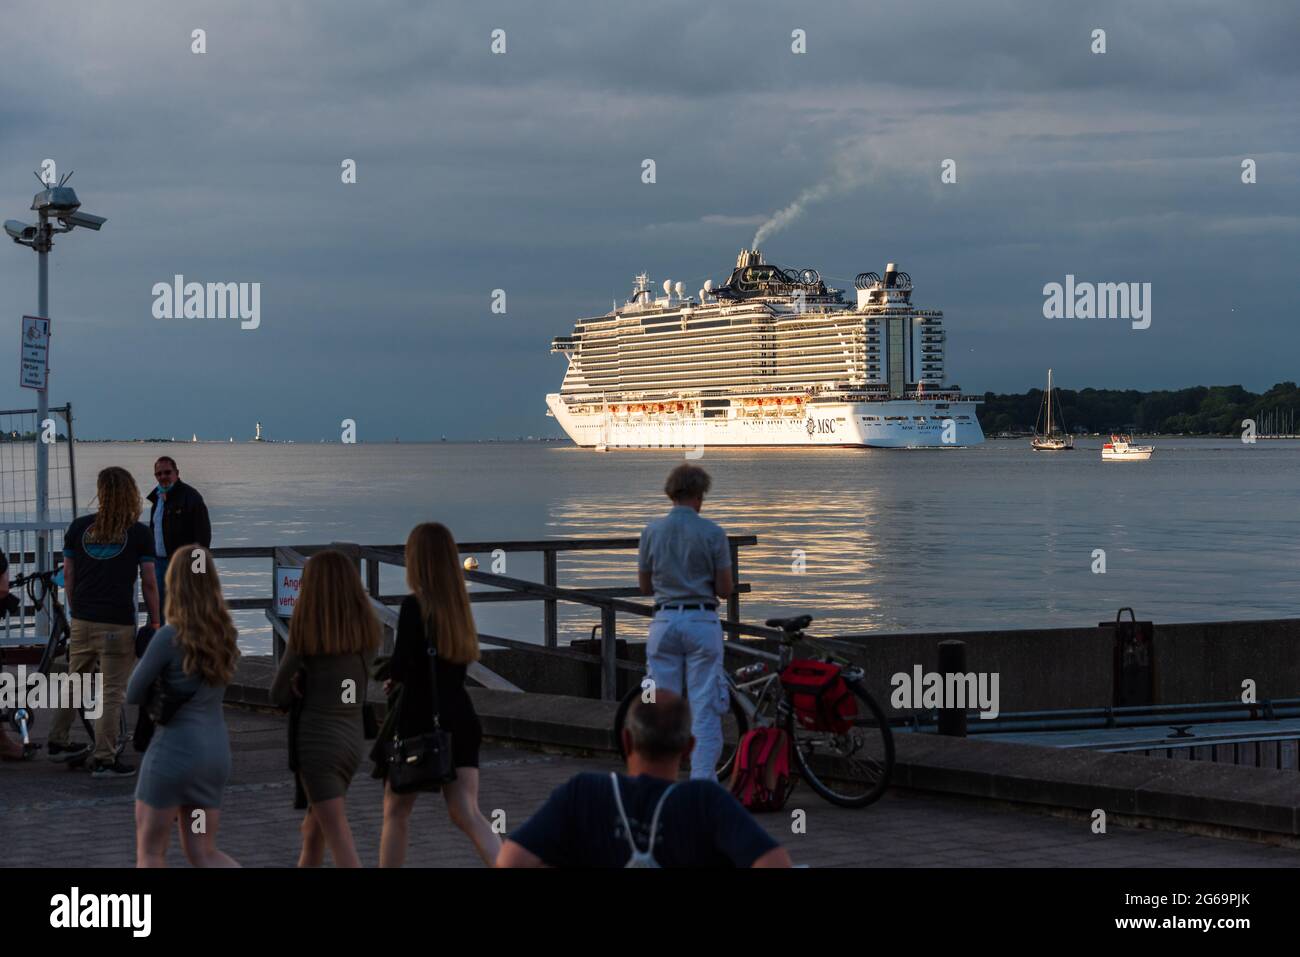 Kreuzfahrtschiffes MSC Seaview in der abendlichen Kieler Förde in Richtung Ostsee, beobachtet von Menschen an der Kiellinie Foto Stock